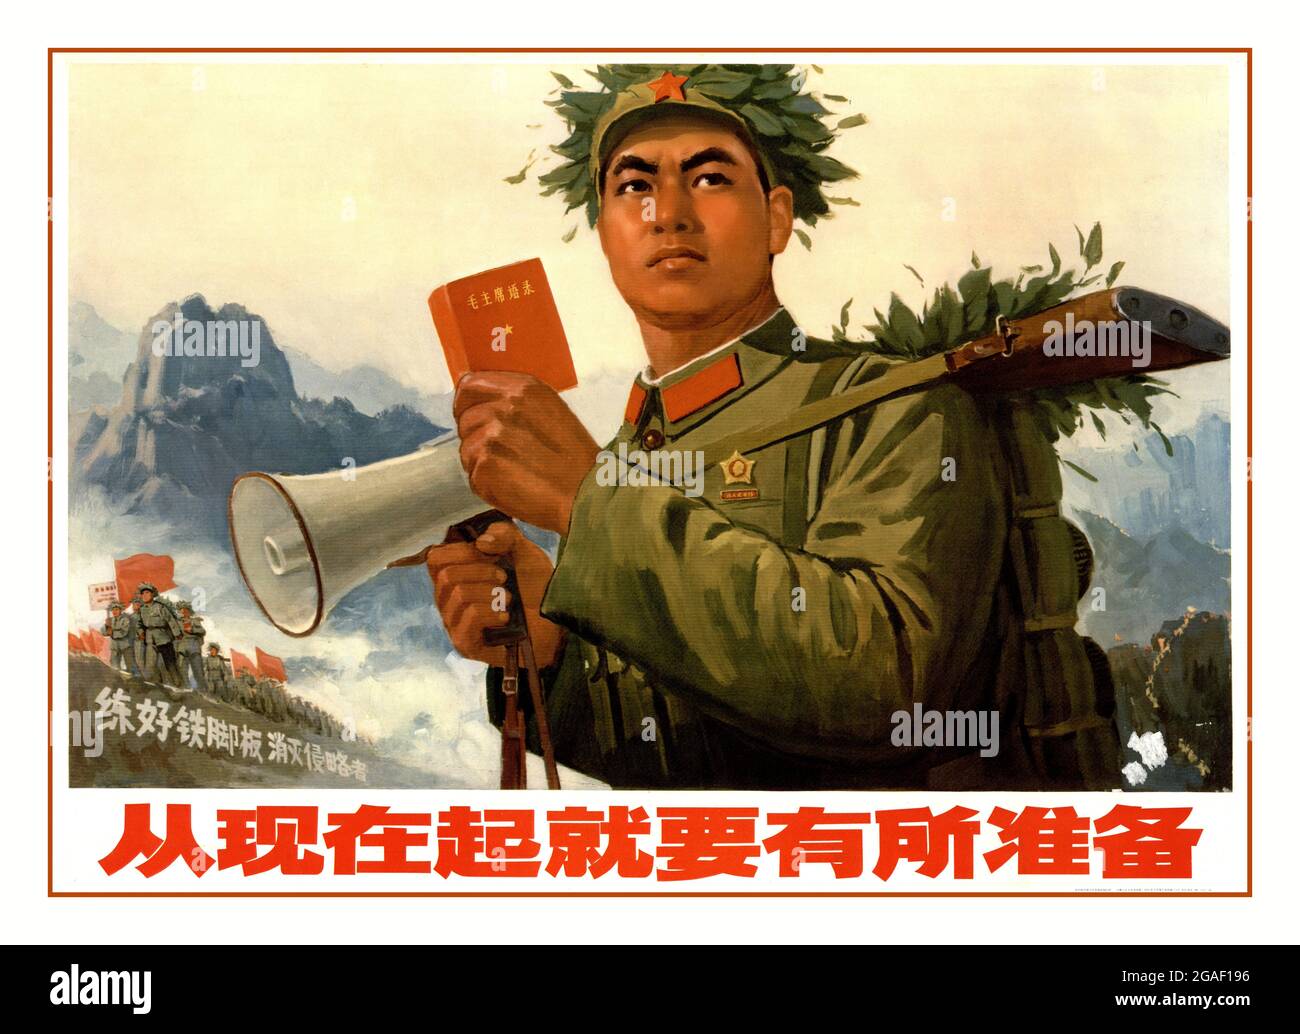 L'affiche de propagande chinoise des années 1970 « désormais, nous devons améliorer notre préparation un peu plus » 1971 Soldat révolutionnaire chinois avec le mégaphone et le Livre rouge du président Mao. La Grande Révolution culturelle prolétarienne, connue simplement sous le nom de Révolution culturelle Banque D'Images